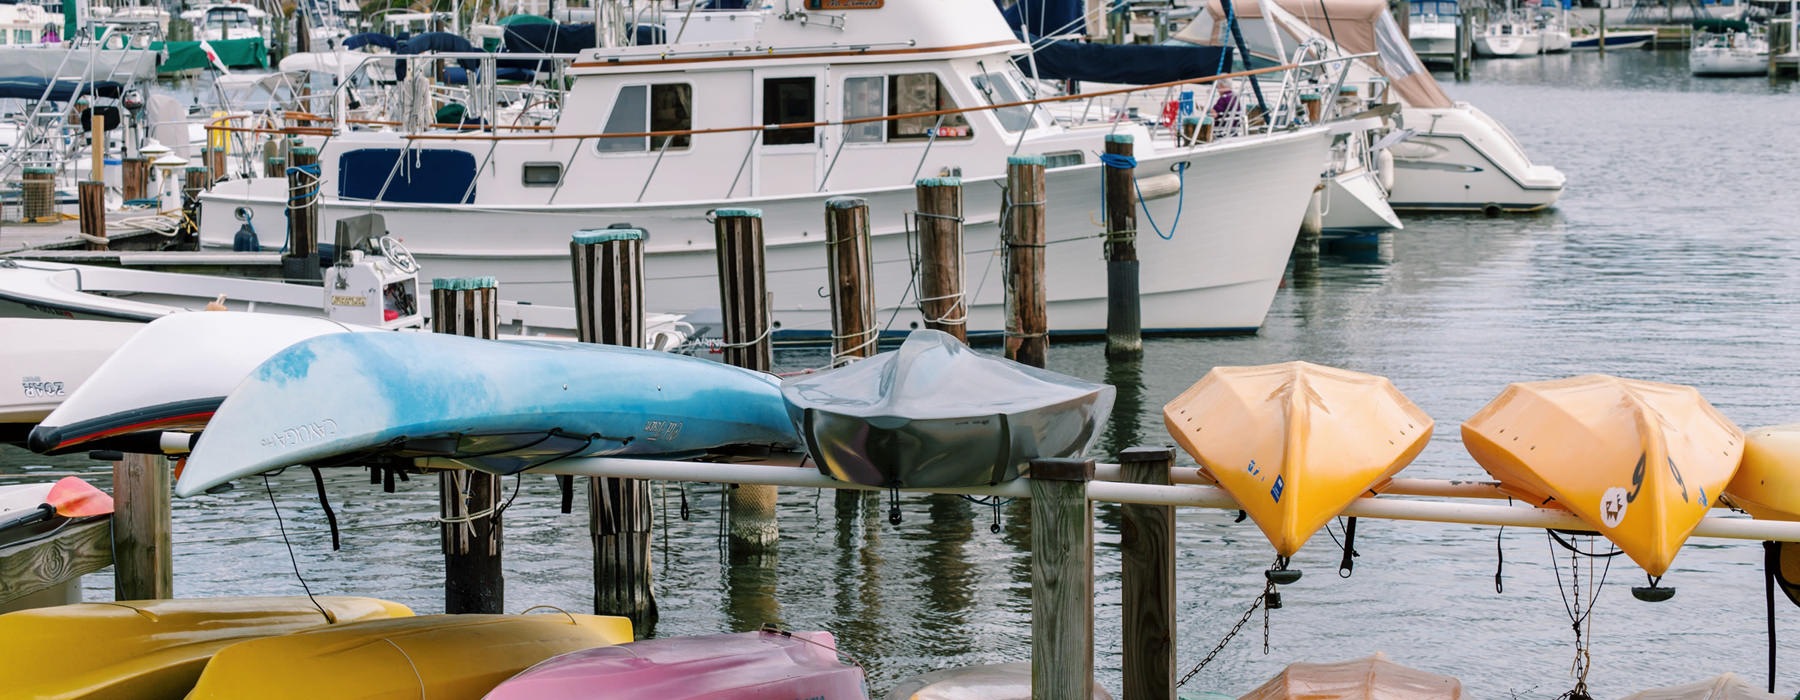 Marina with kayaks and sailing boats.